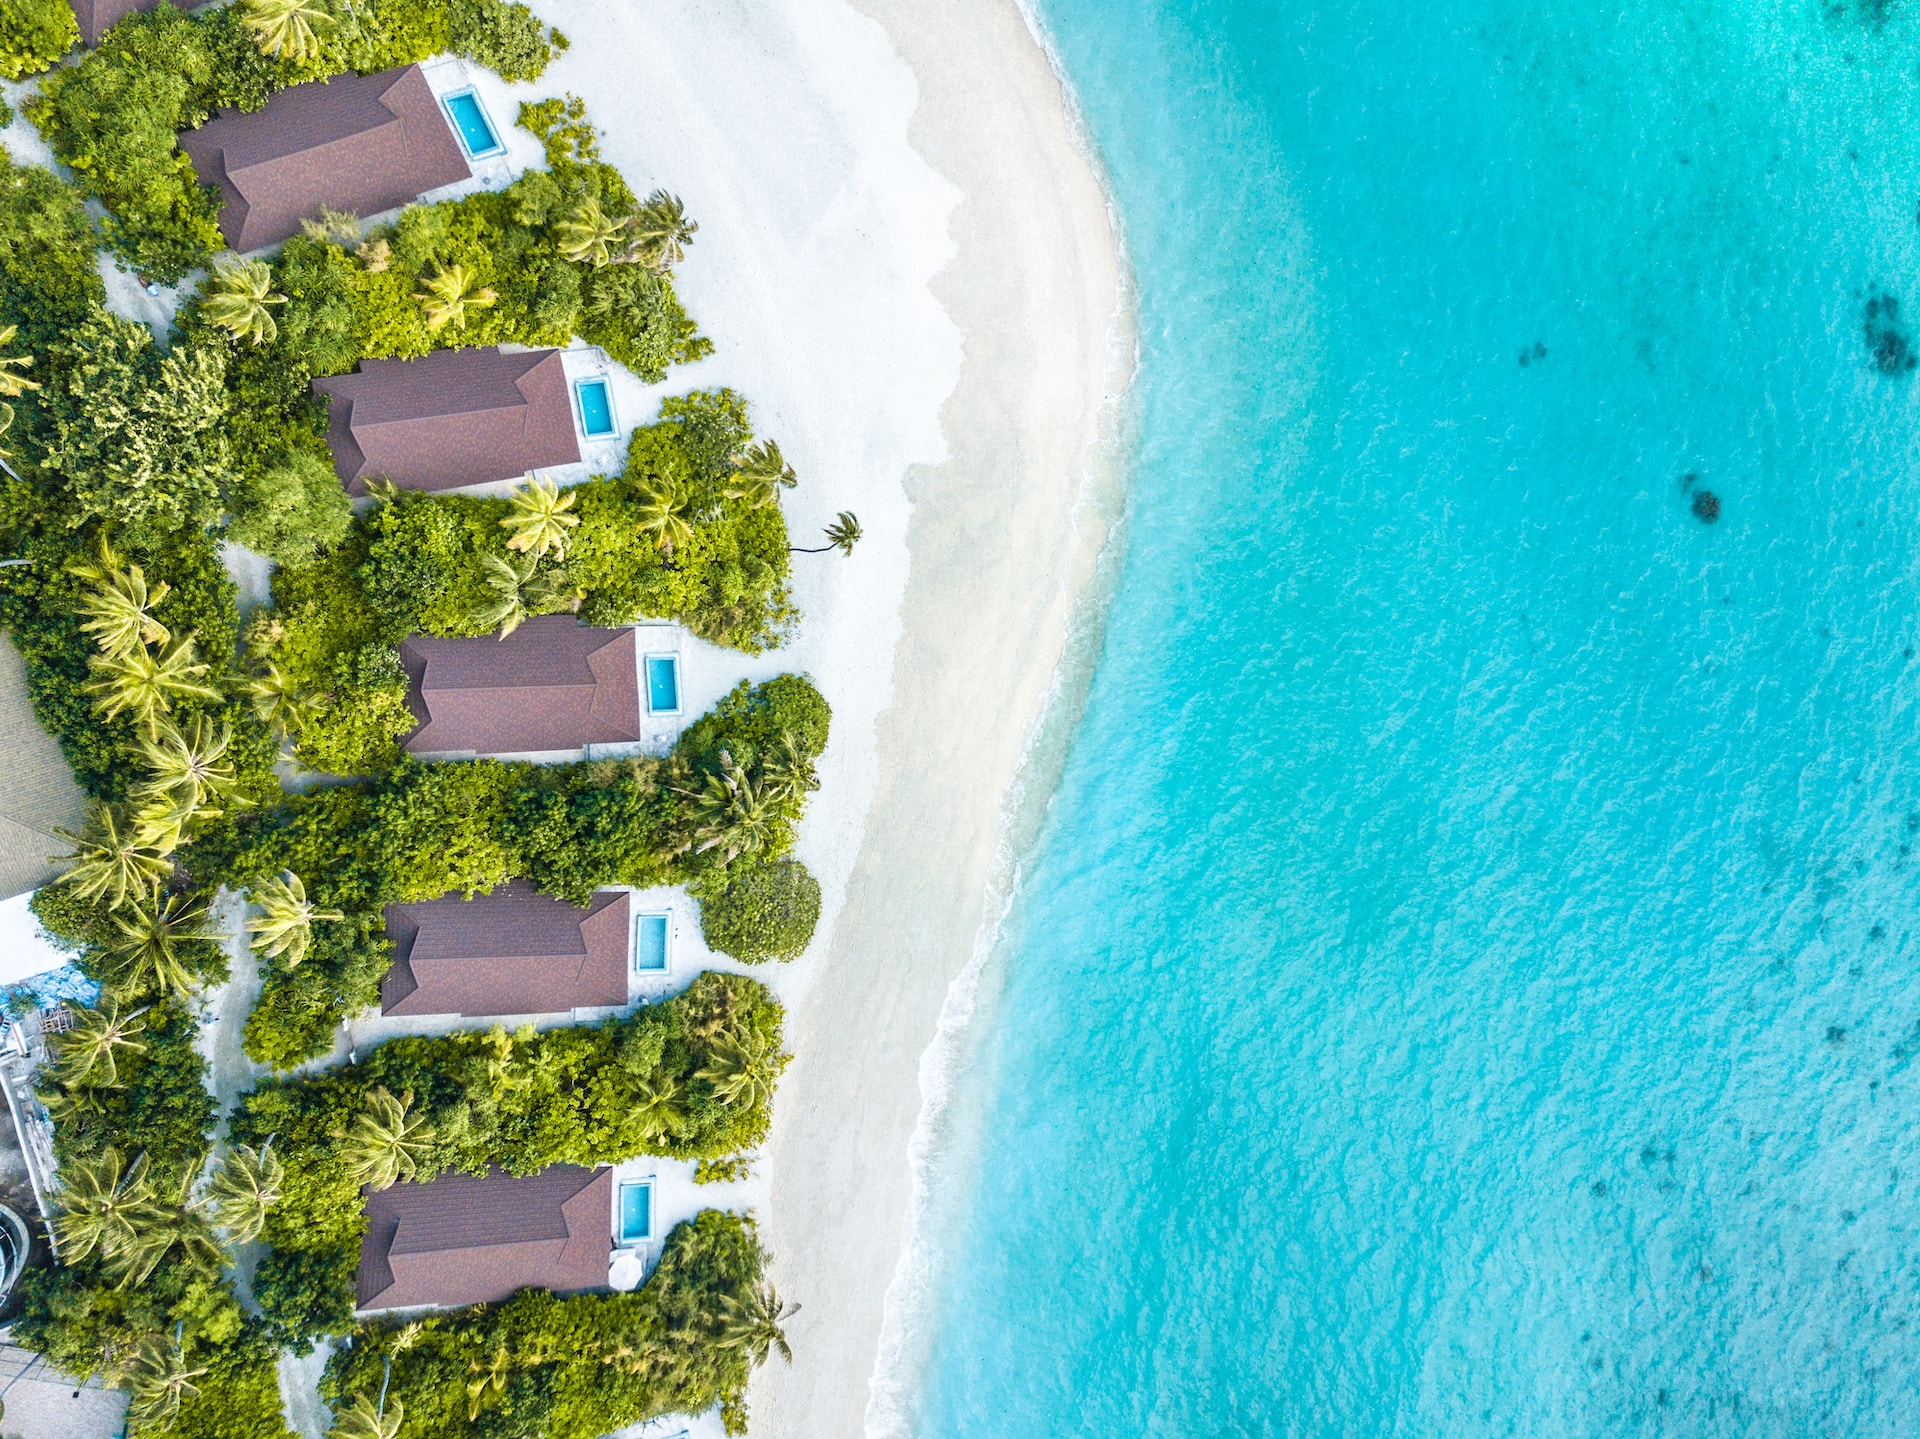 Seaside villas (photo: Rayyu Maldives)